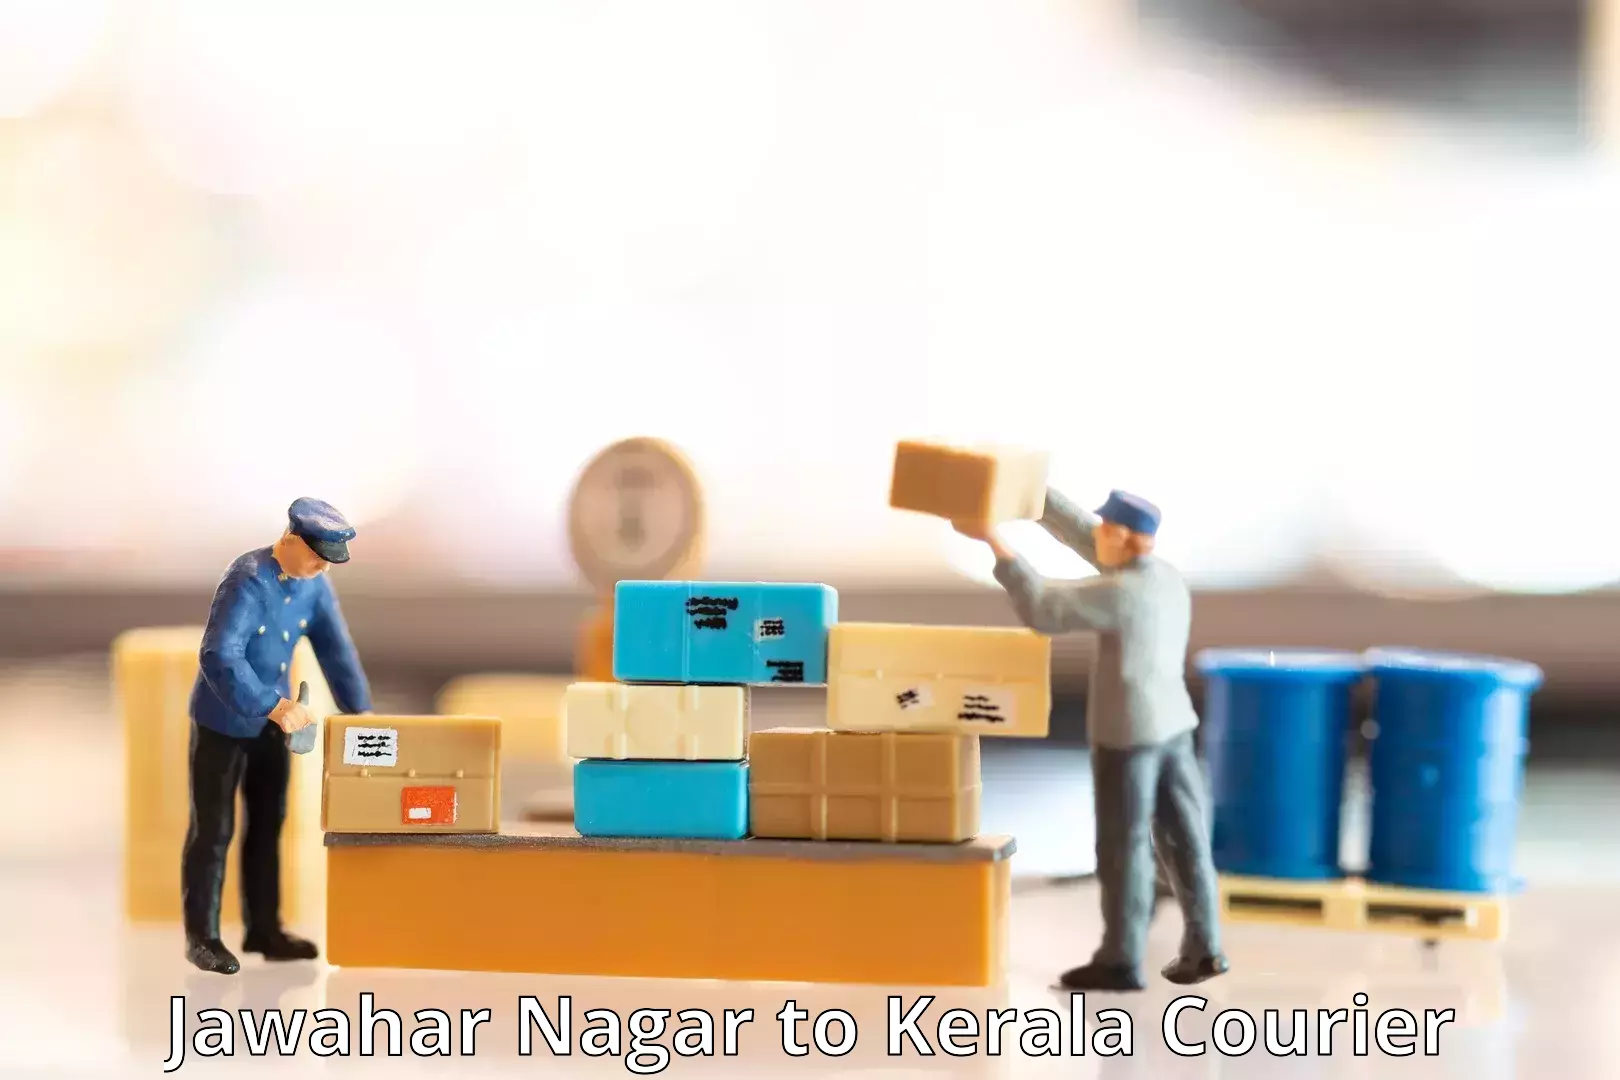 Global courier networks Jawahar Nagar to Kalpetta